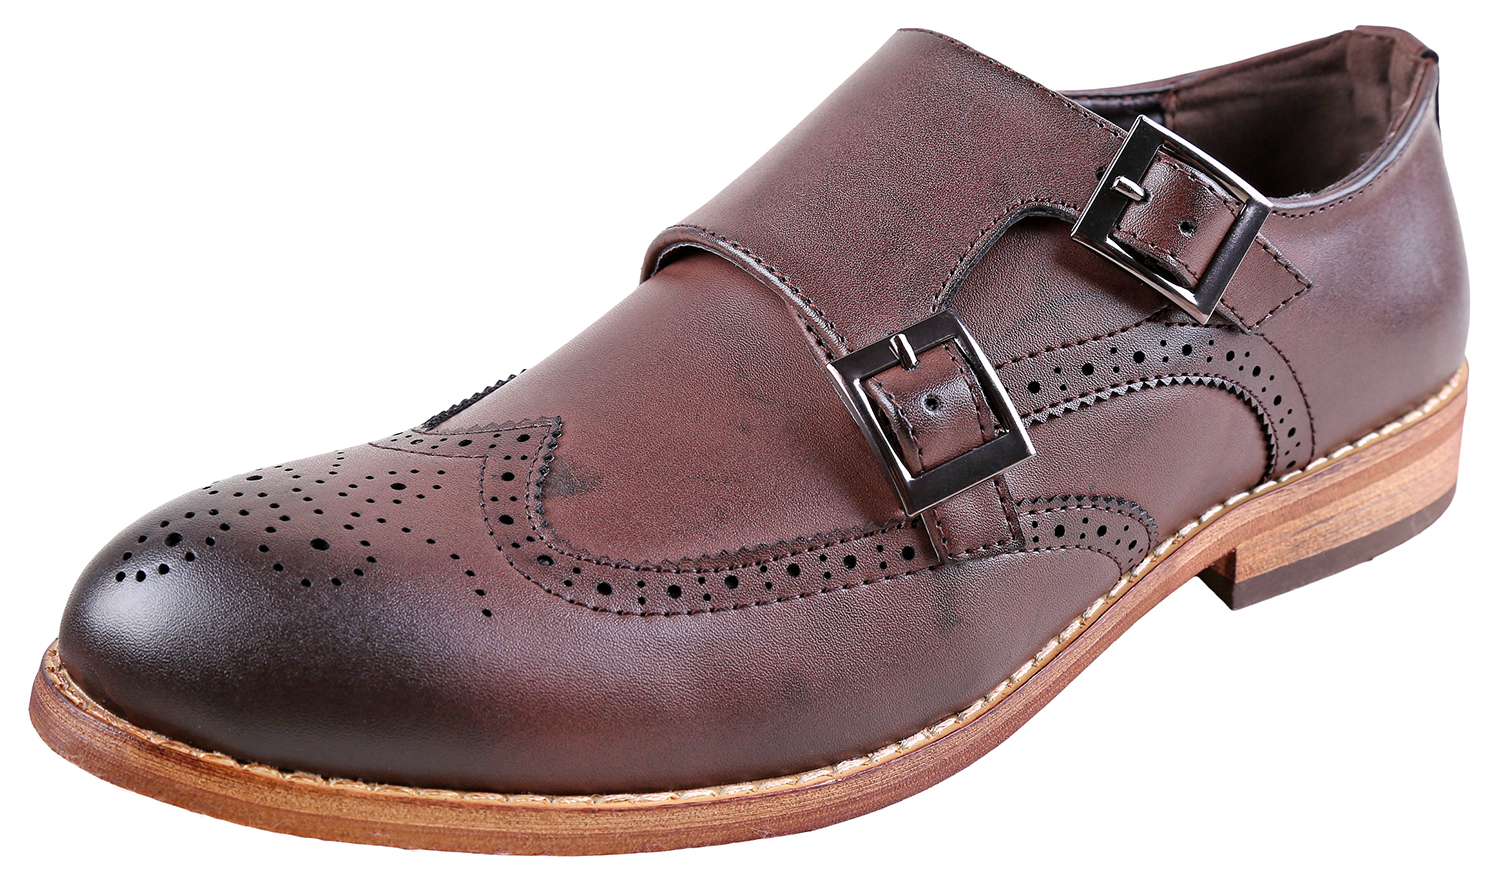 Urban Fox Allen Men's Dress Shoe | Double Monk Strap | Brogue | Wingtip Shoes for Men | Dark Brown 9 M US - image 1 of 7